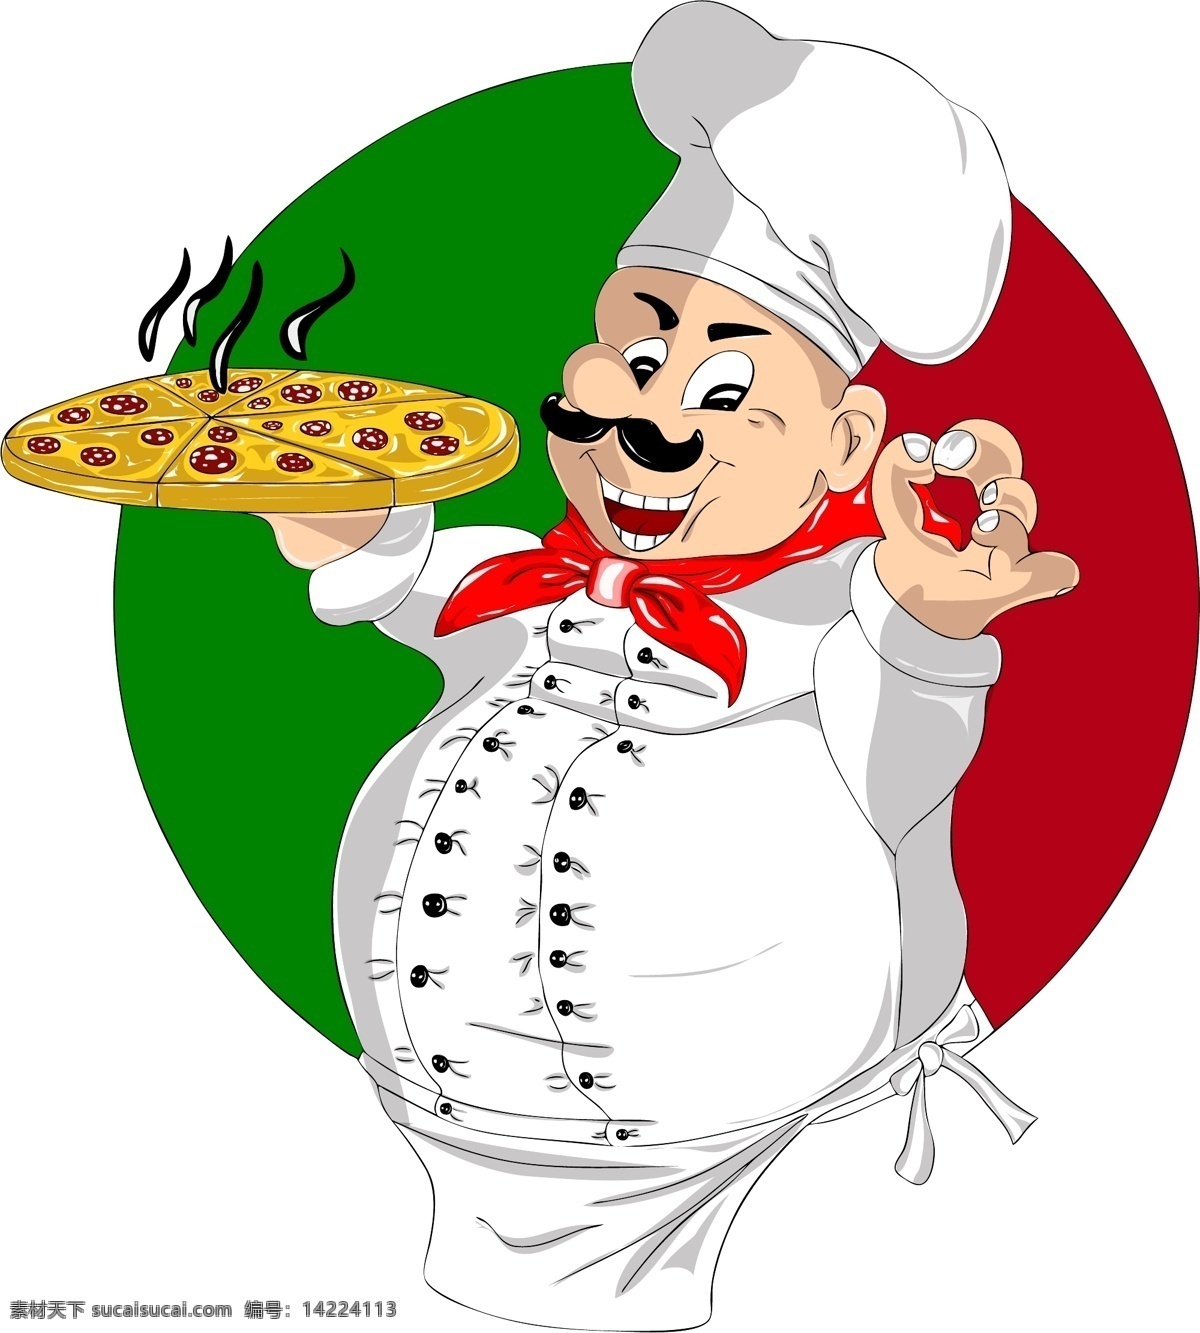 意大利披萨 比萨 披萨 皮萨 批萨 卡通厨师 手绘 美味 意大利美食 pizzeria 批萨类 西红柿 蕃茄 餐饮美食 西餐美食 矢量 餐饮美食素材 pizza 西餐 美食 生活百科